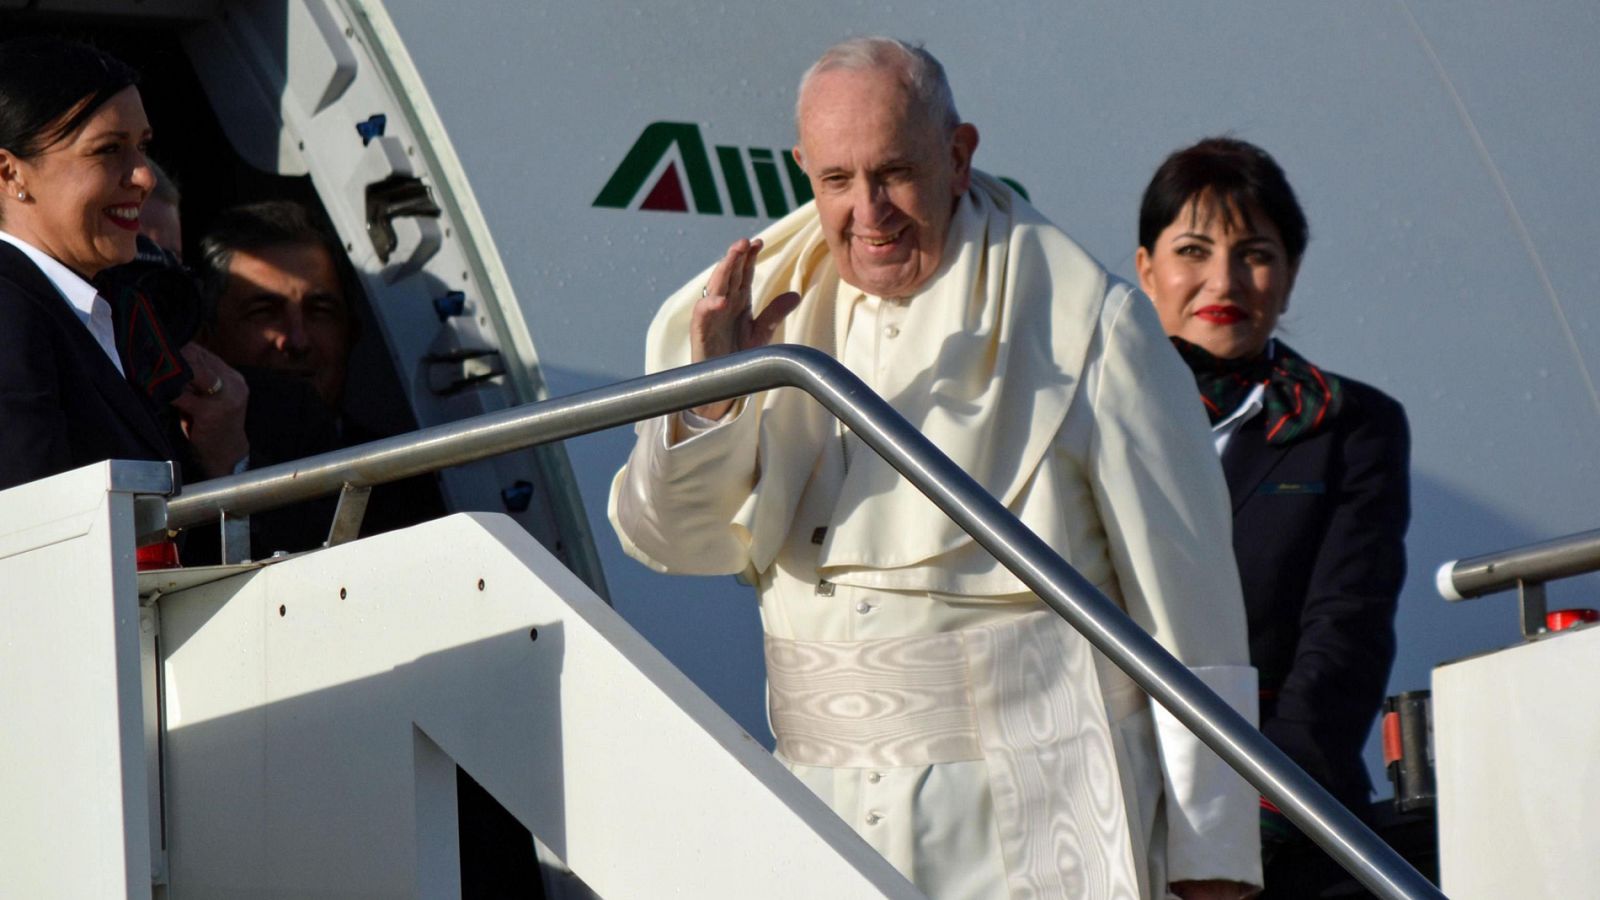 JMJ Panamá: El papa Francisco viaja a Panamá para animar a los jóvenes en la JMJ - RTVE.es